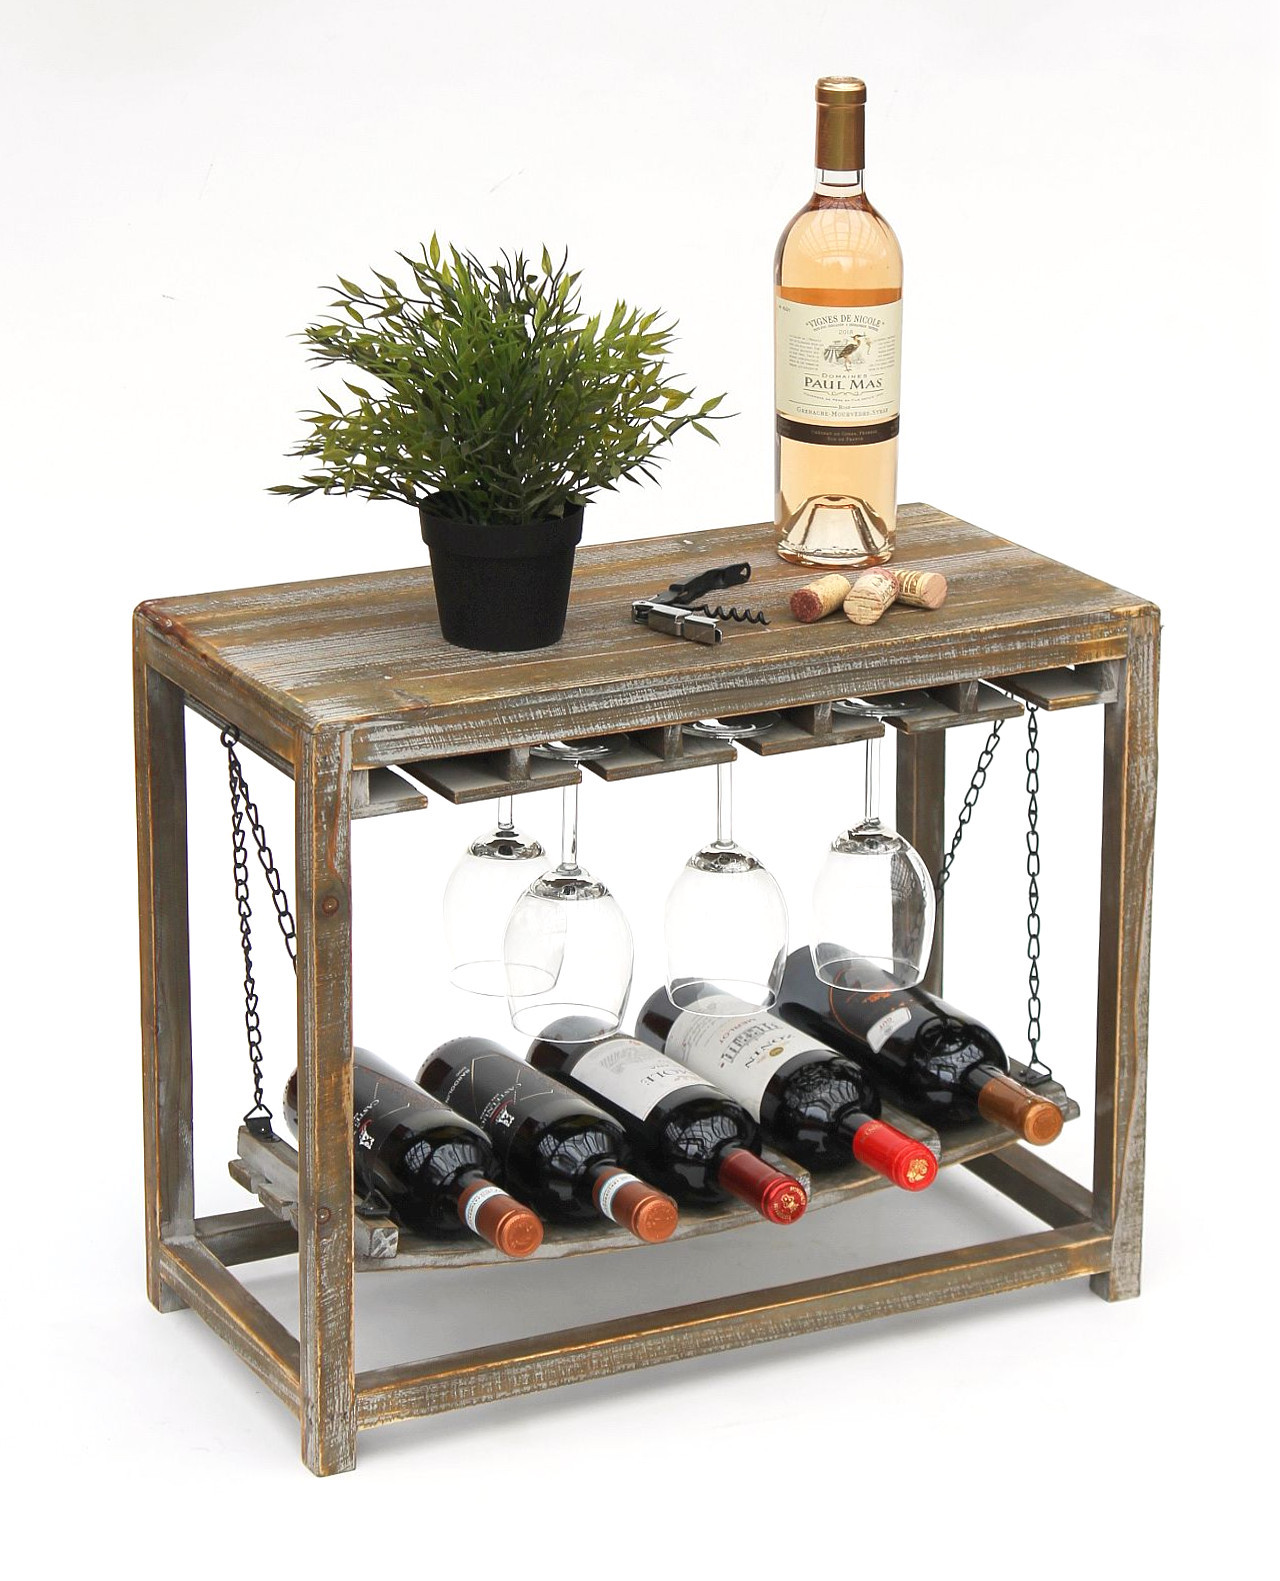 DanDiBo Weinregal Holz Braun mit Ablage 47 cm Flaschenregal mit Glashalter  9202-R Flaschenhalter Weinschrank Regal stehend - DanDiBo-Ambiente